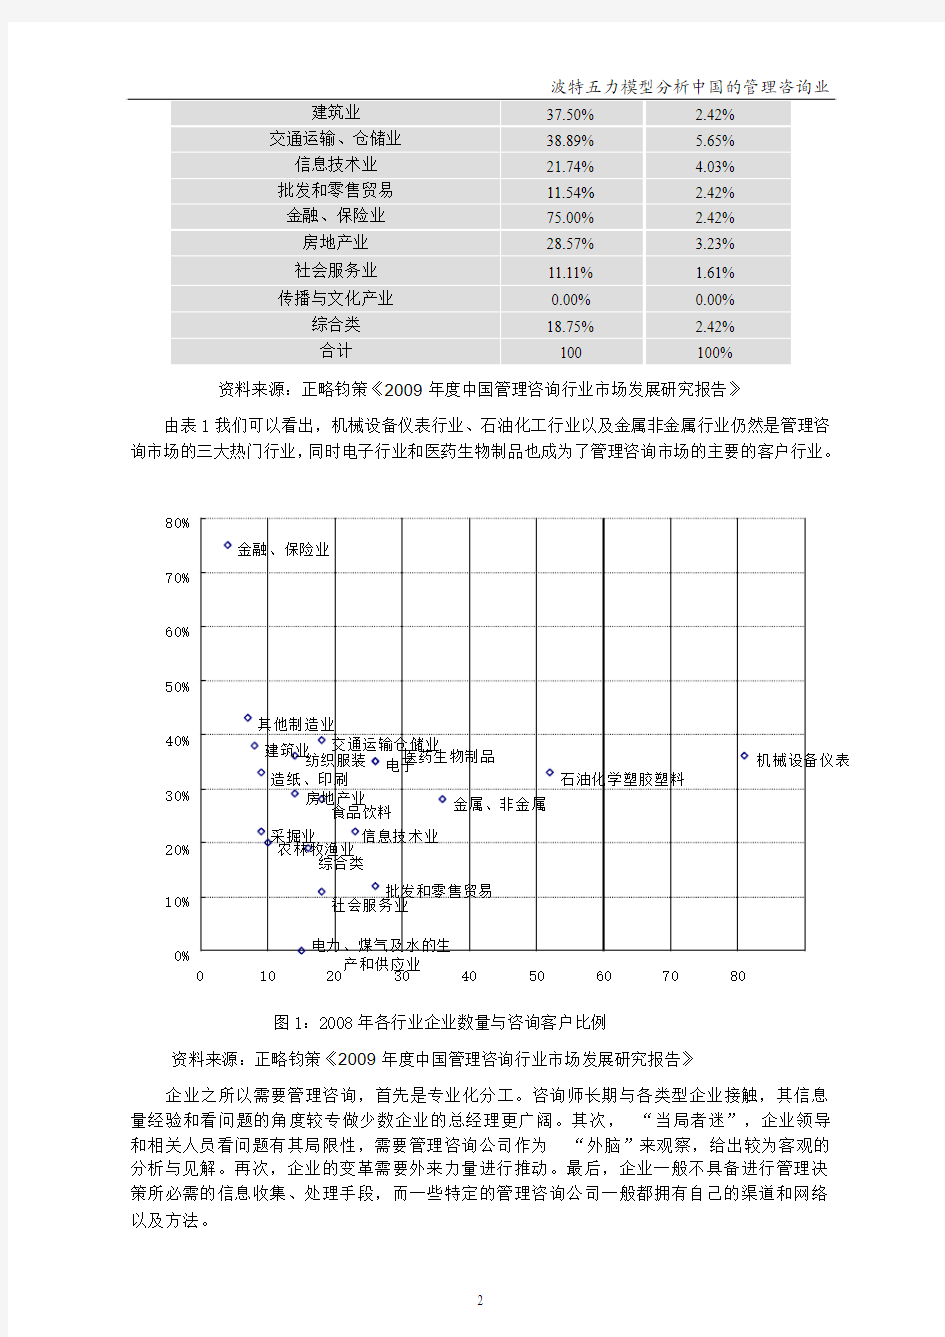 波特五力模型分析中国的管理咨询业